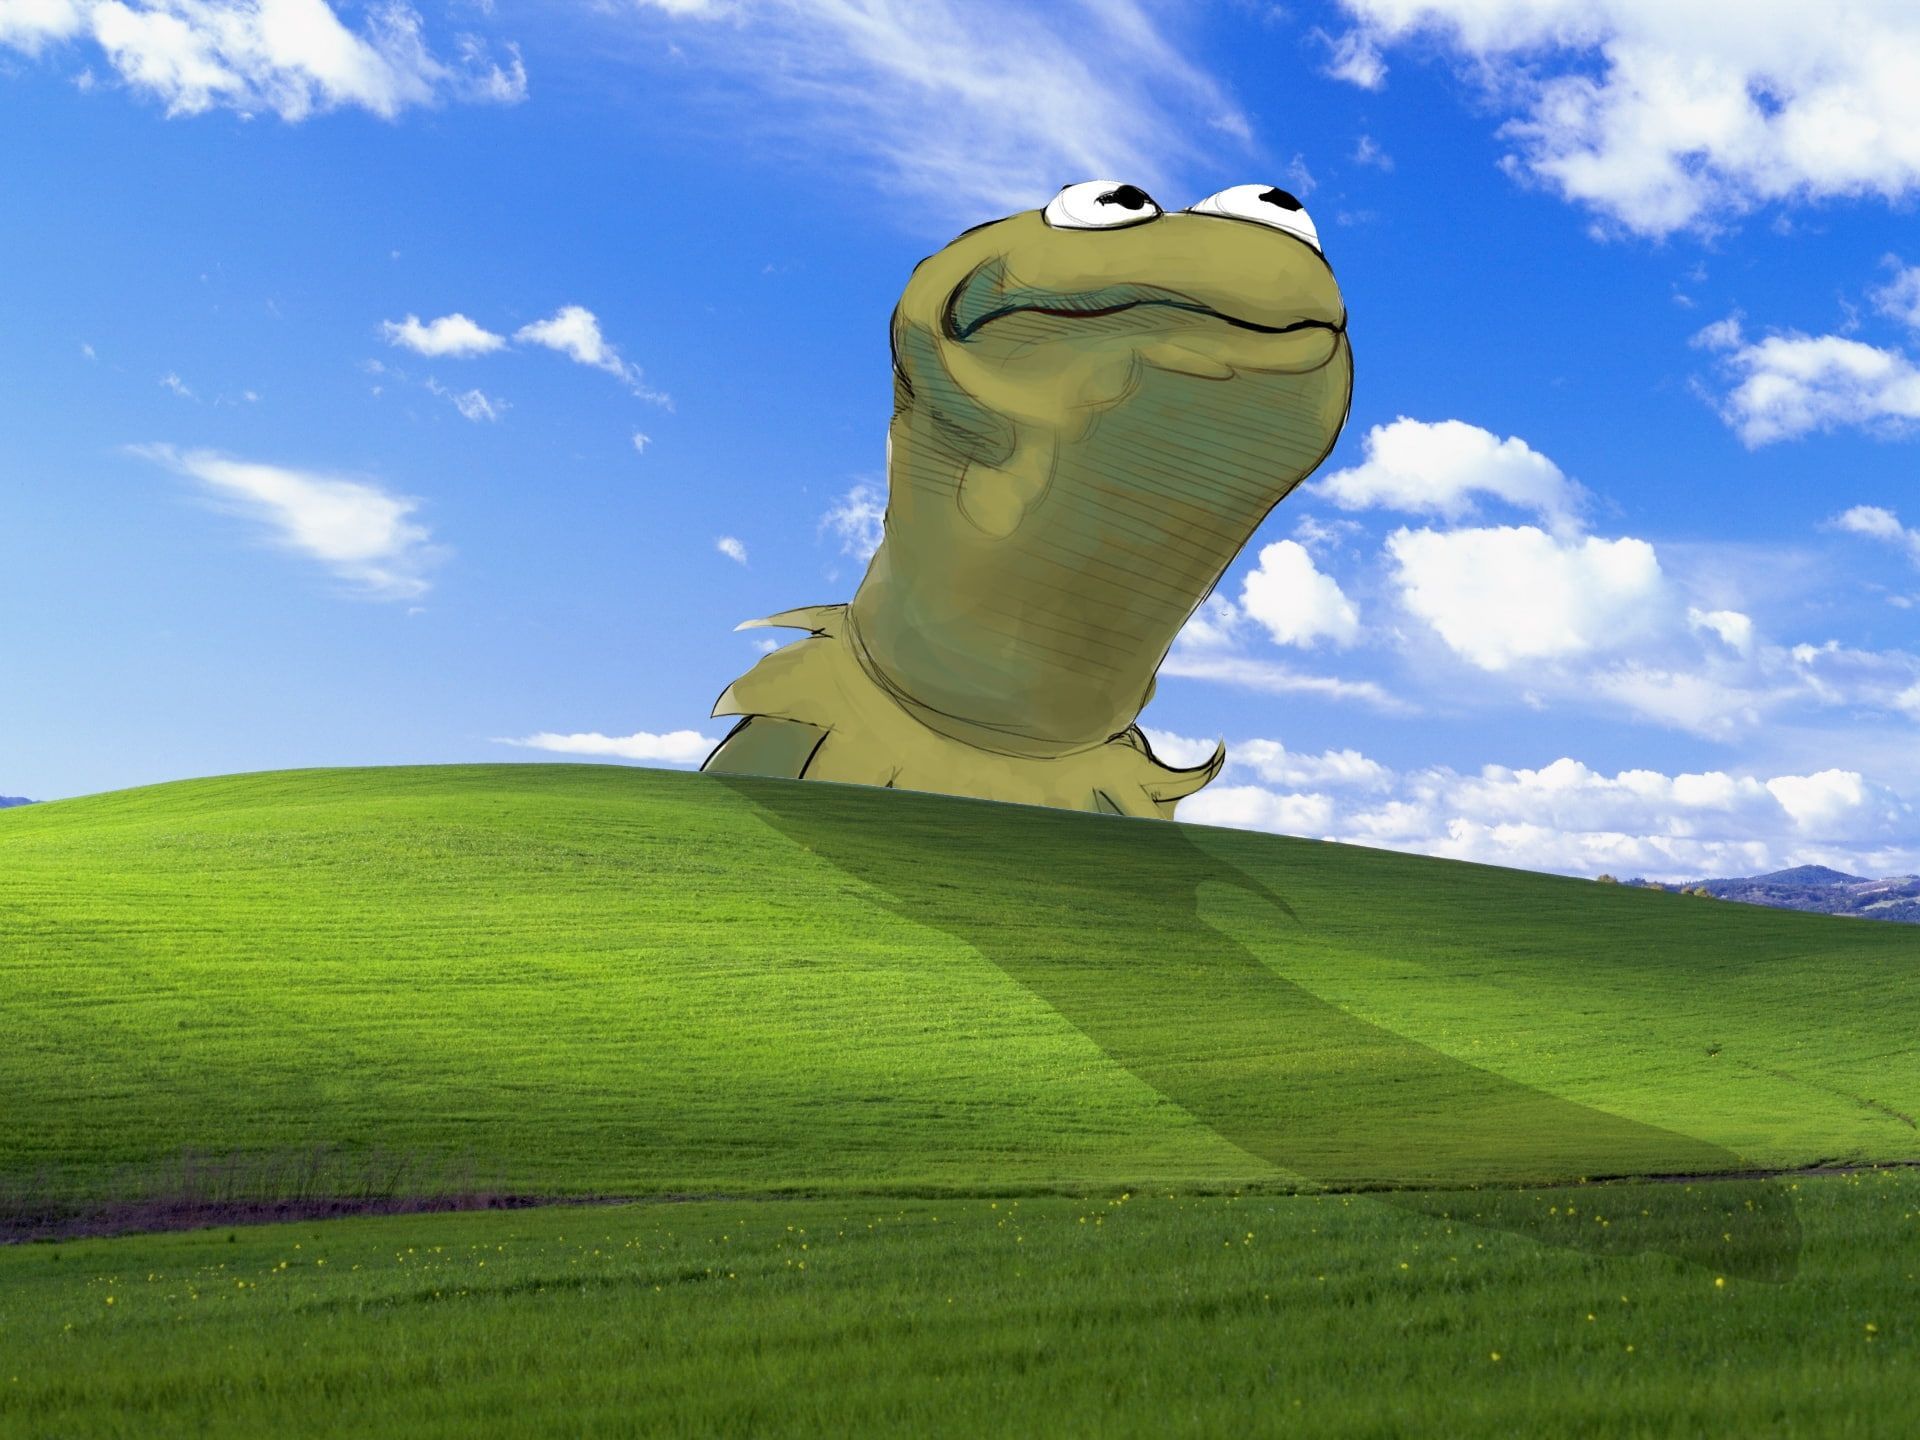 Funny Zoom Background, Funny Zoom Background. Frog wallpaper, Cute desktop wallpaper, Desktop wallpaper art